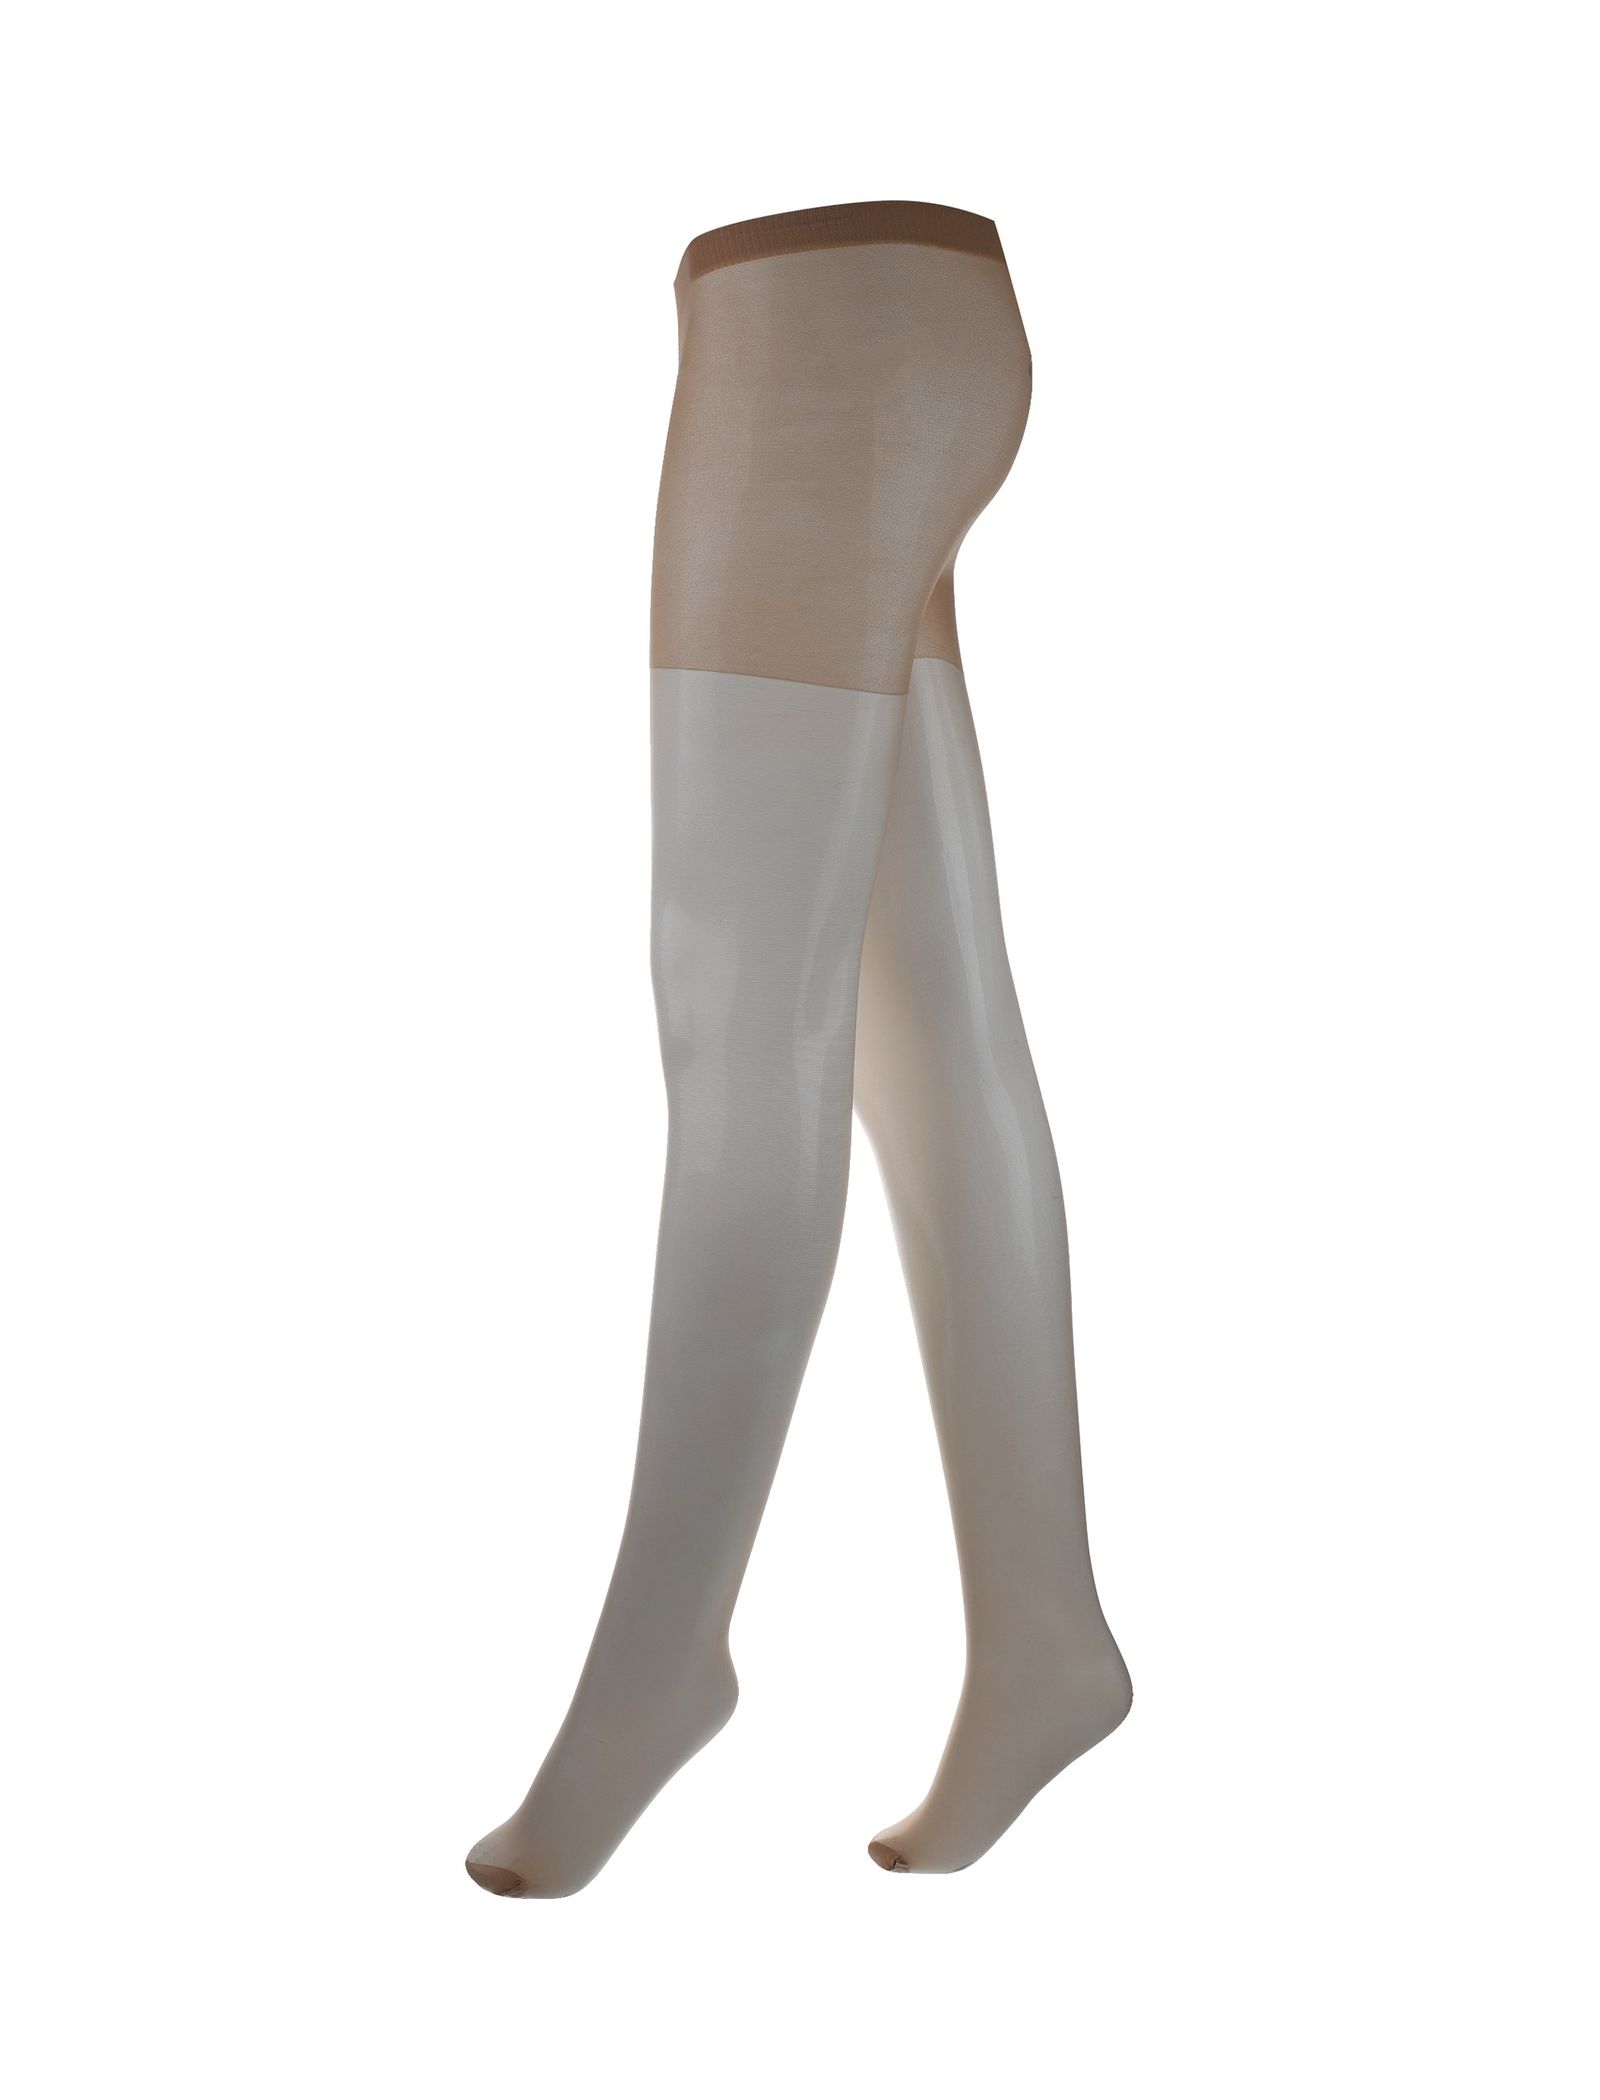 جوراب شلواری شفاف زنانه بسته 3 عددی - دبنهامز -  - 4